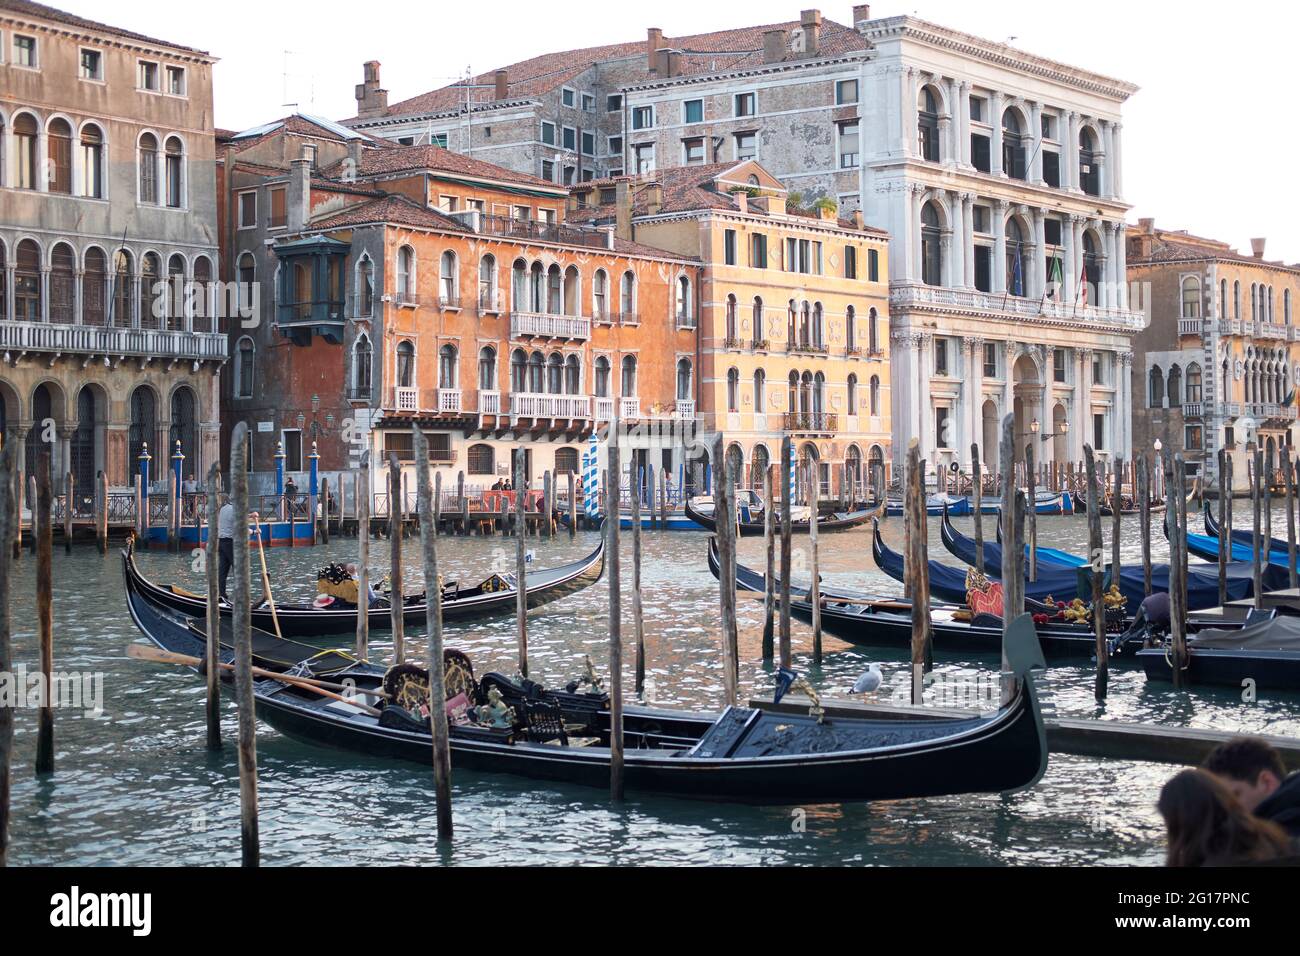 Le grand canal d'accueil avec des gondoles, Venise, Italie, 2017 Banque D'Images